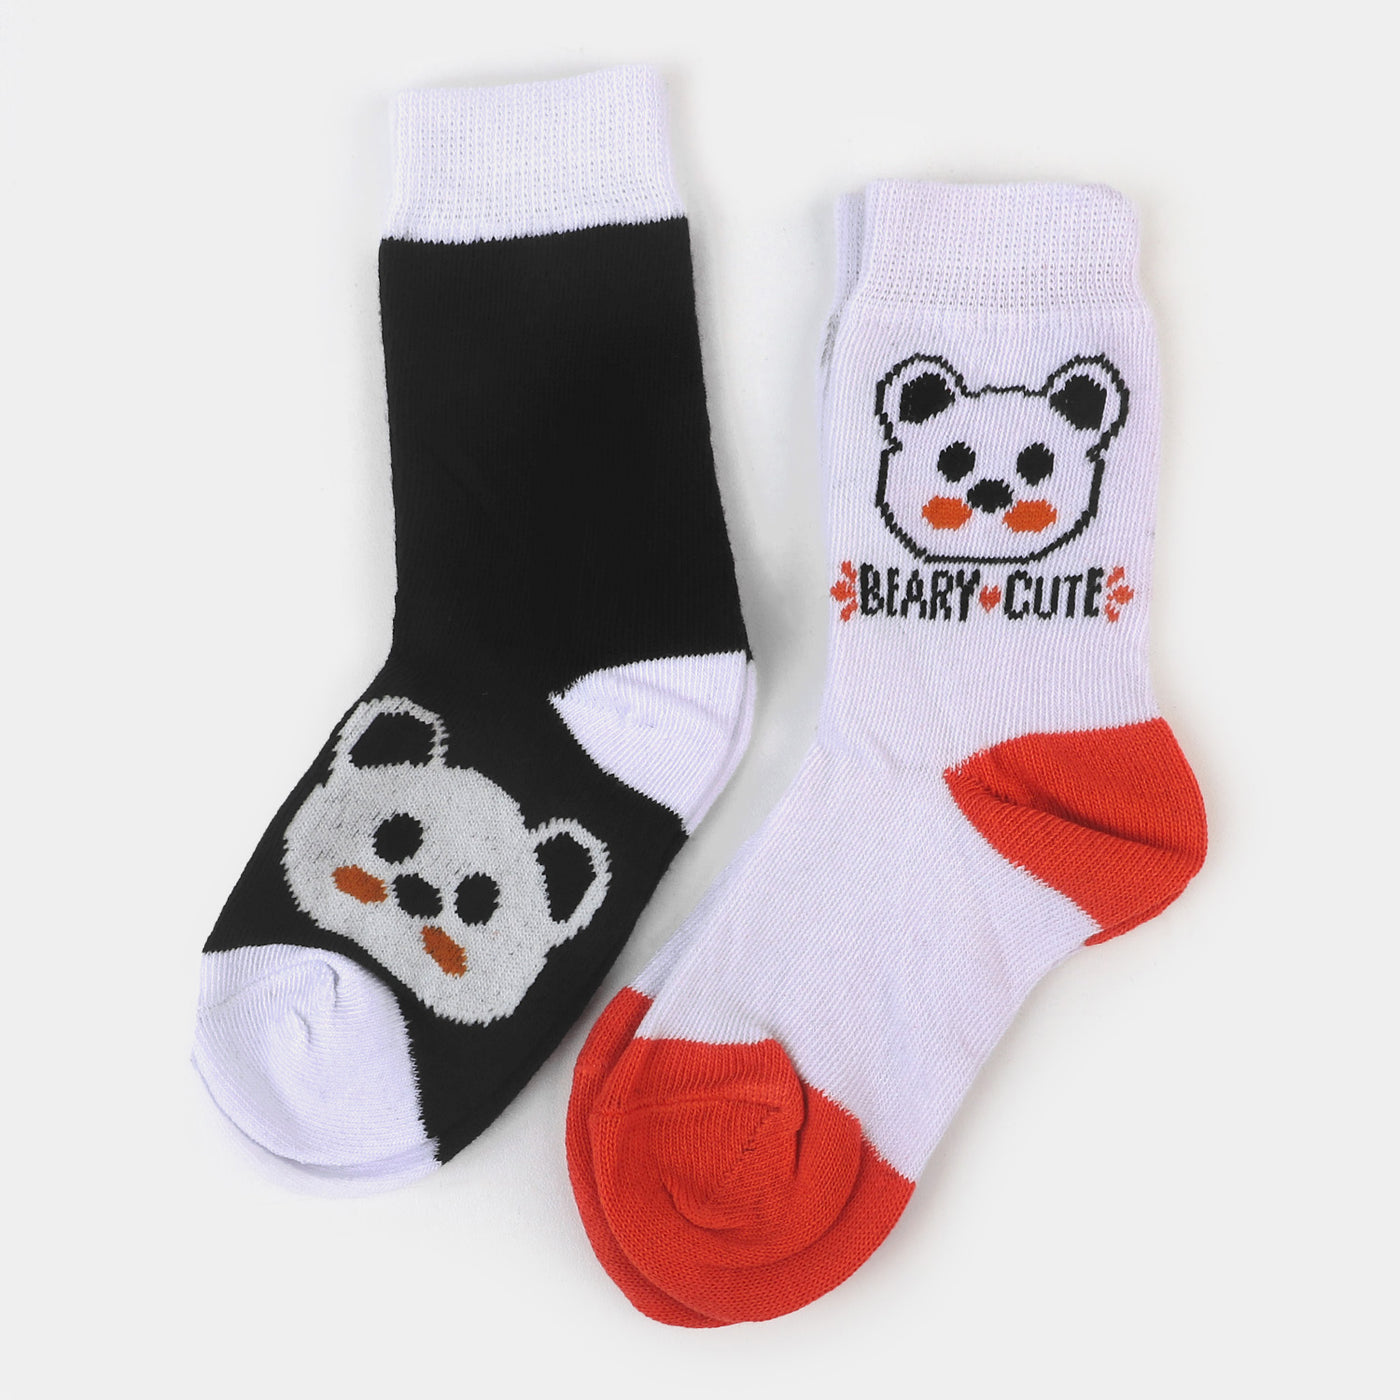 Infant Boys Socks Beary Cute - Black/White